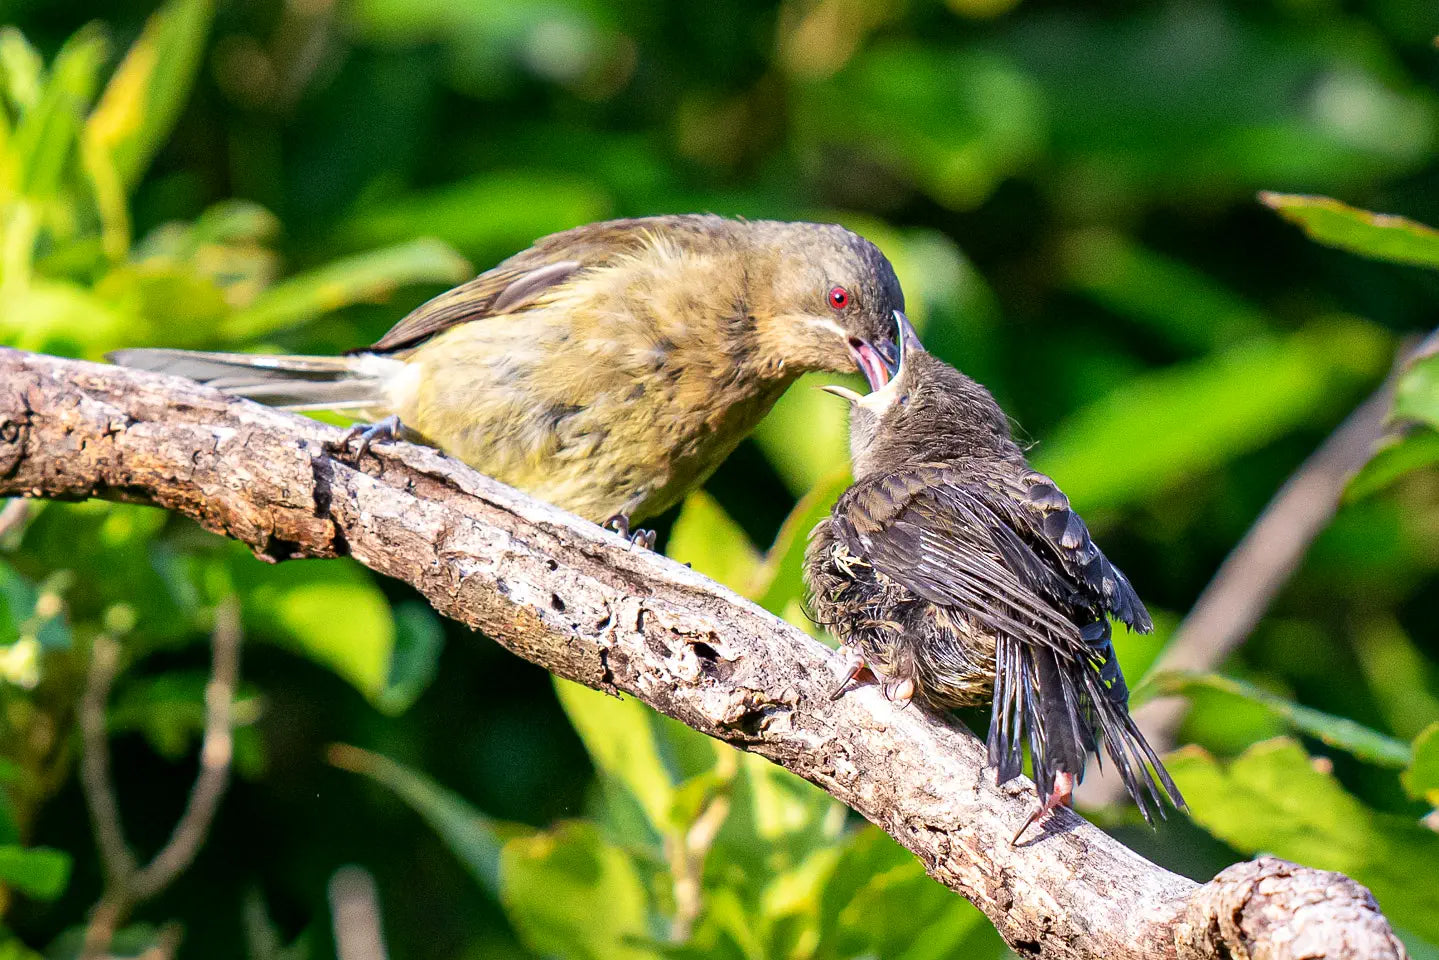 A korimako (bellbird) feeds its fledgling.